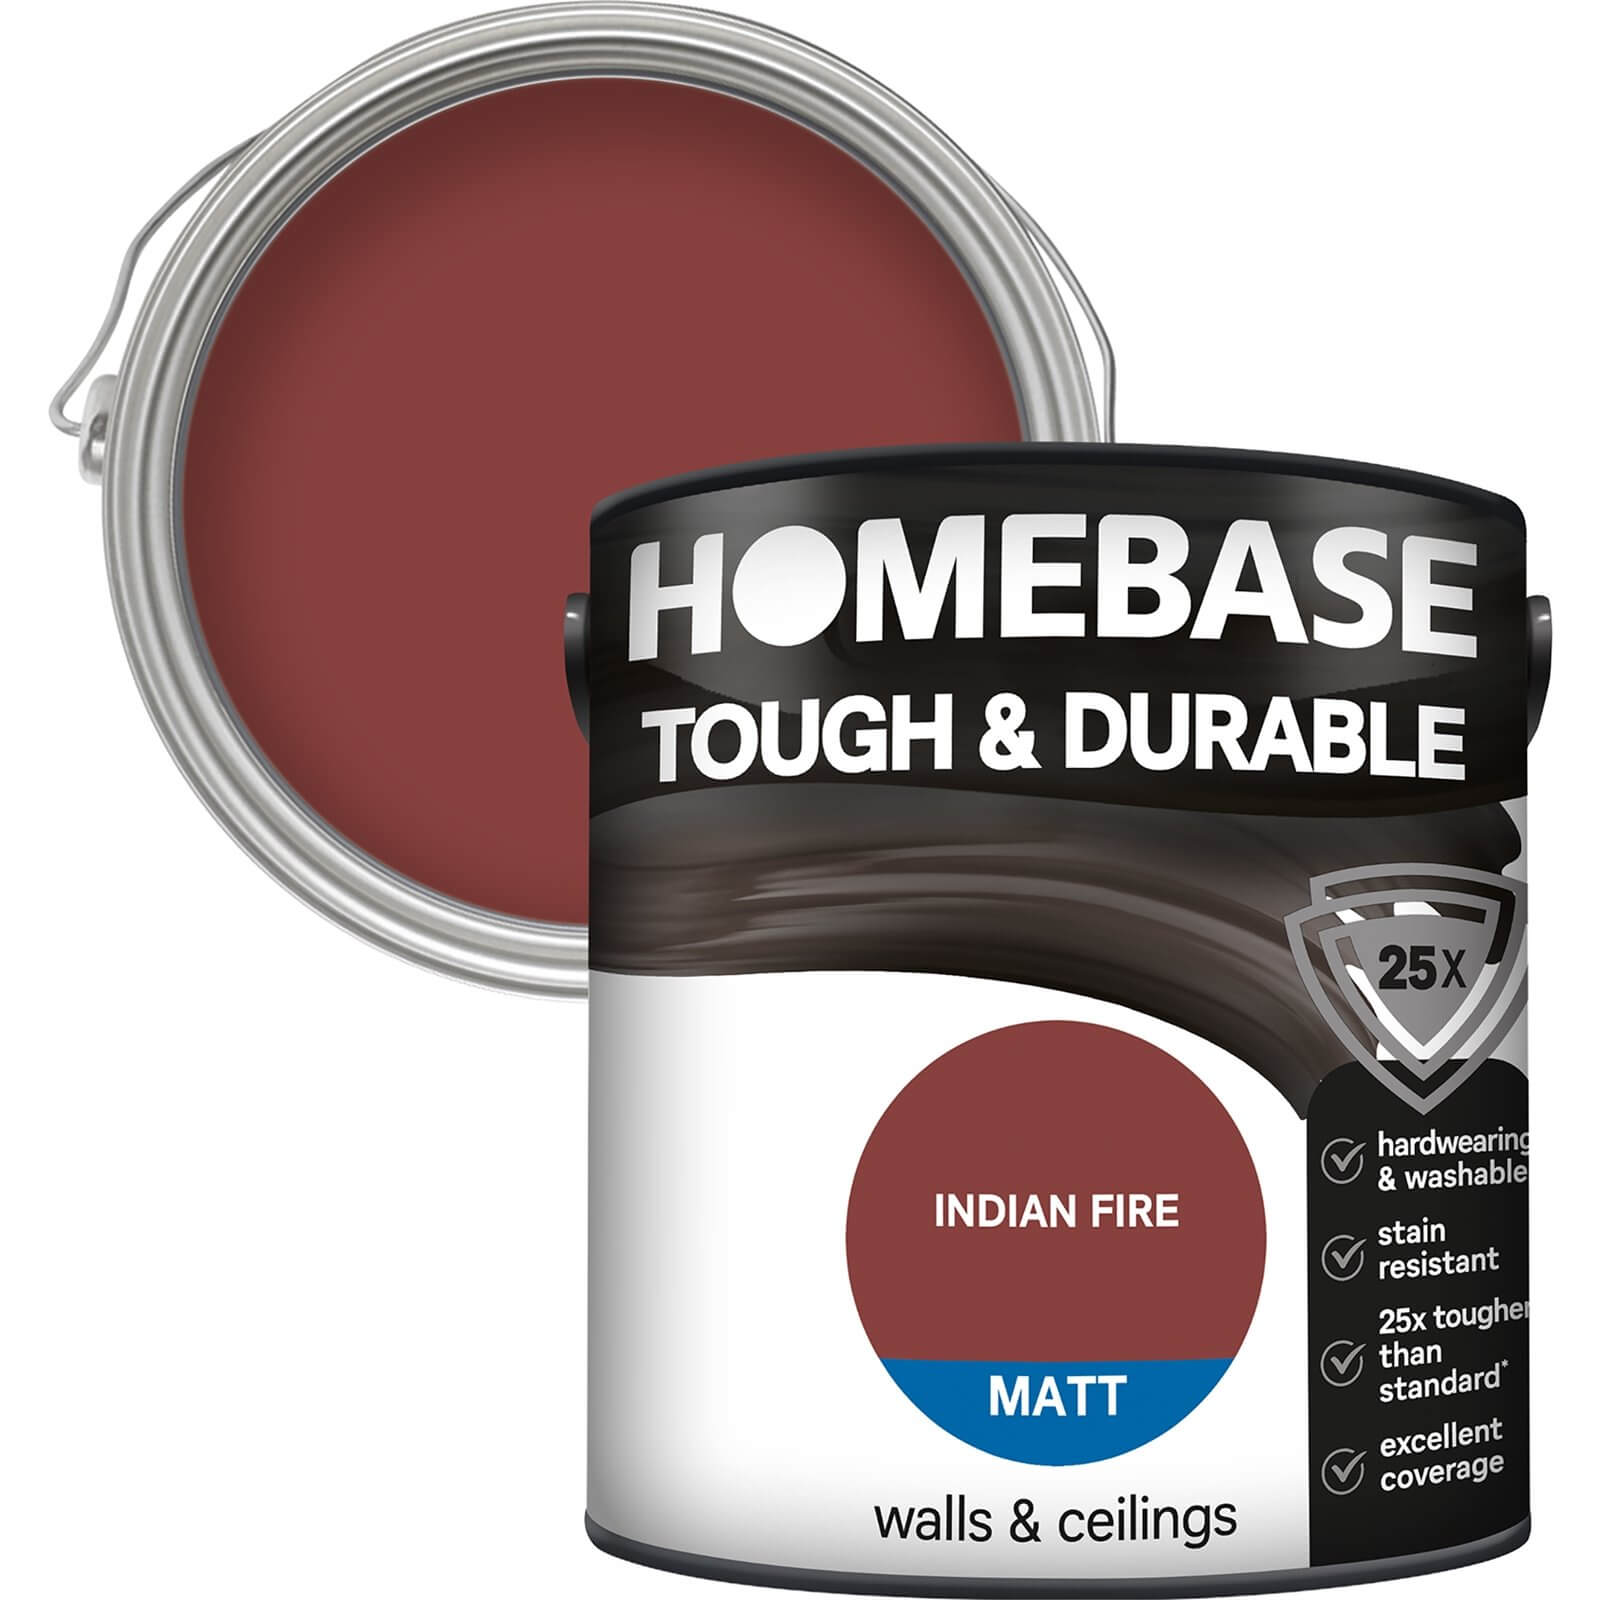 Homebase Tough & Durable Matt Paint Indian Fire - 2.5L